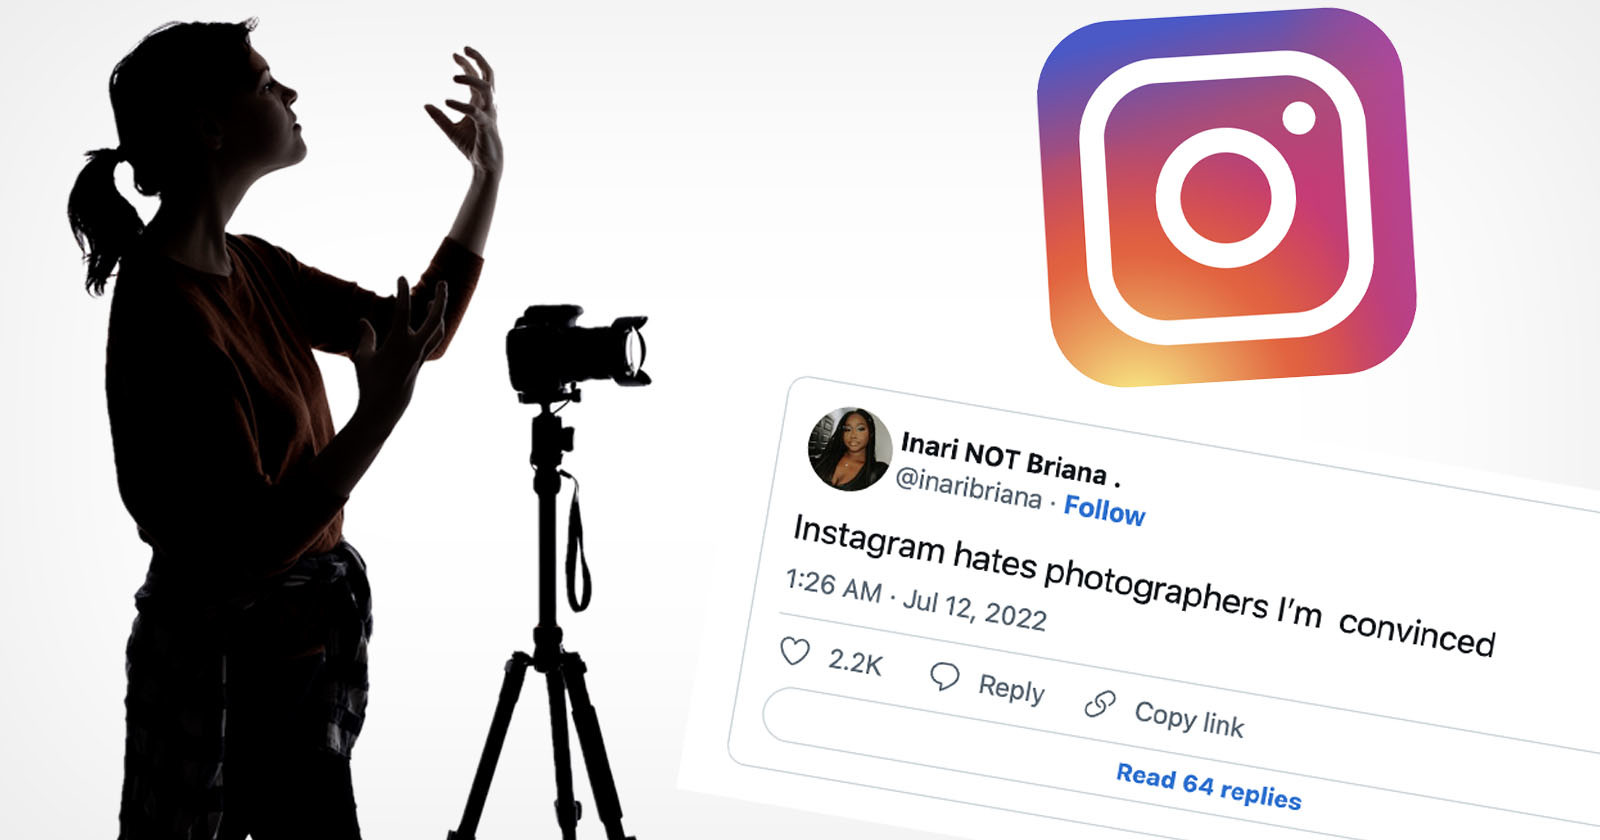  instagram hates photographers lament recent changes 